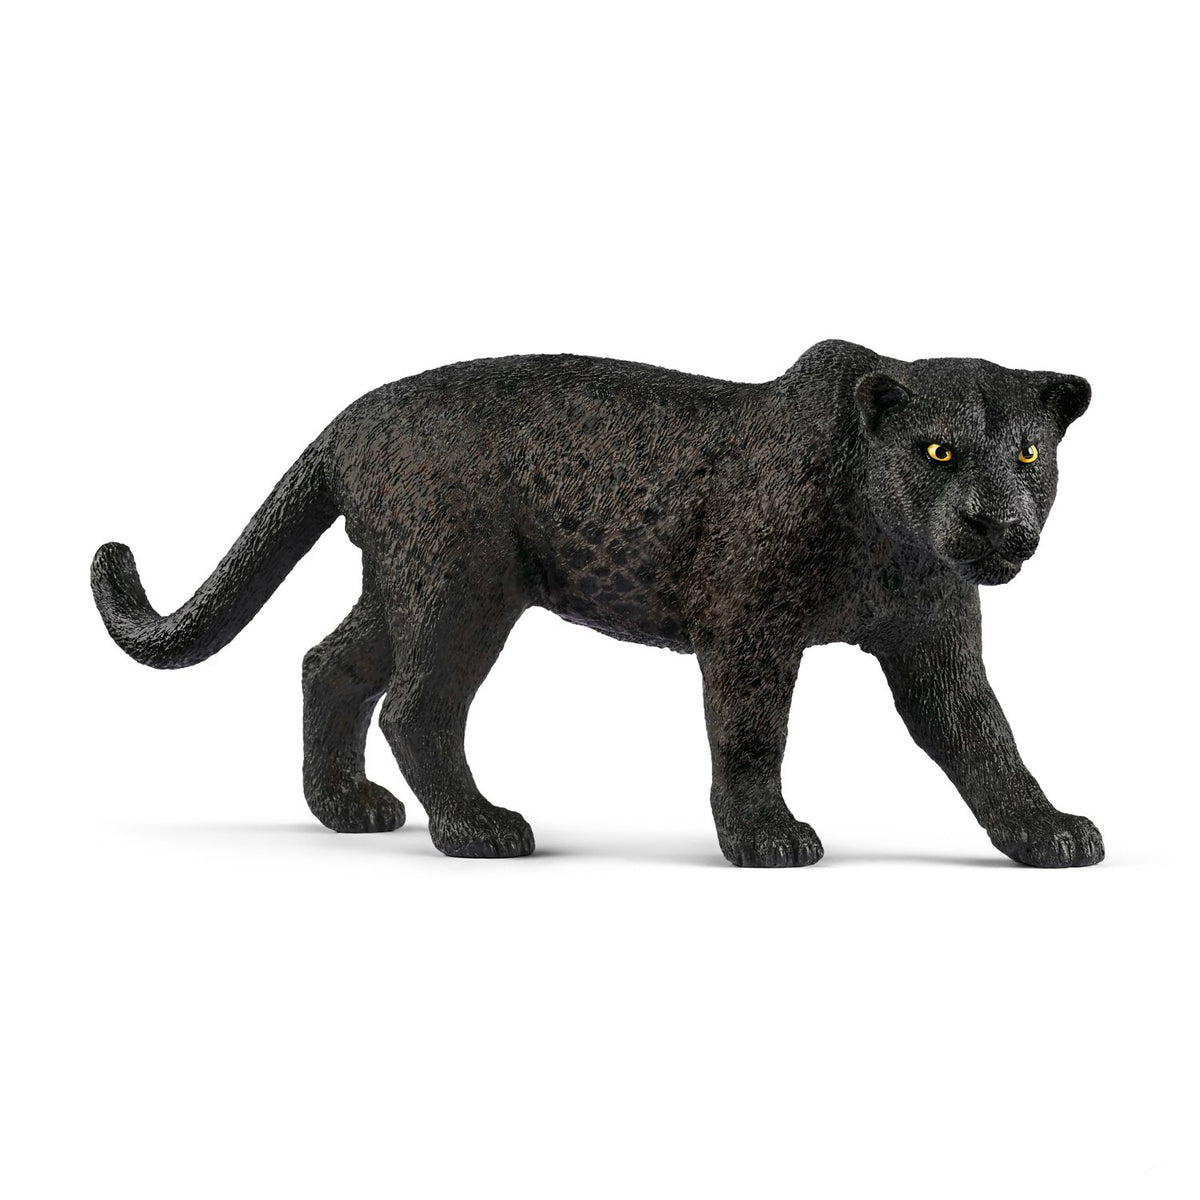 Schleich 14774 Figurine Black Panther Toy